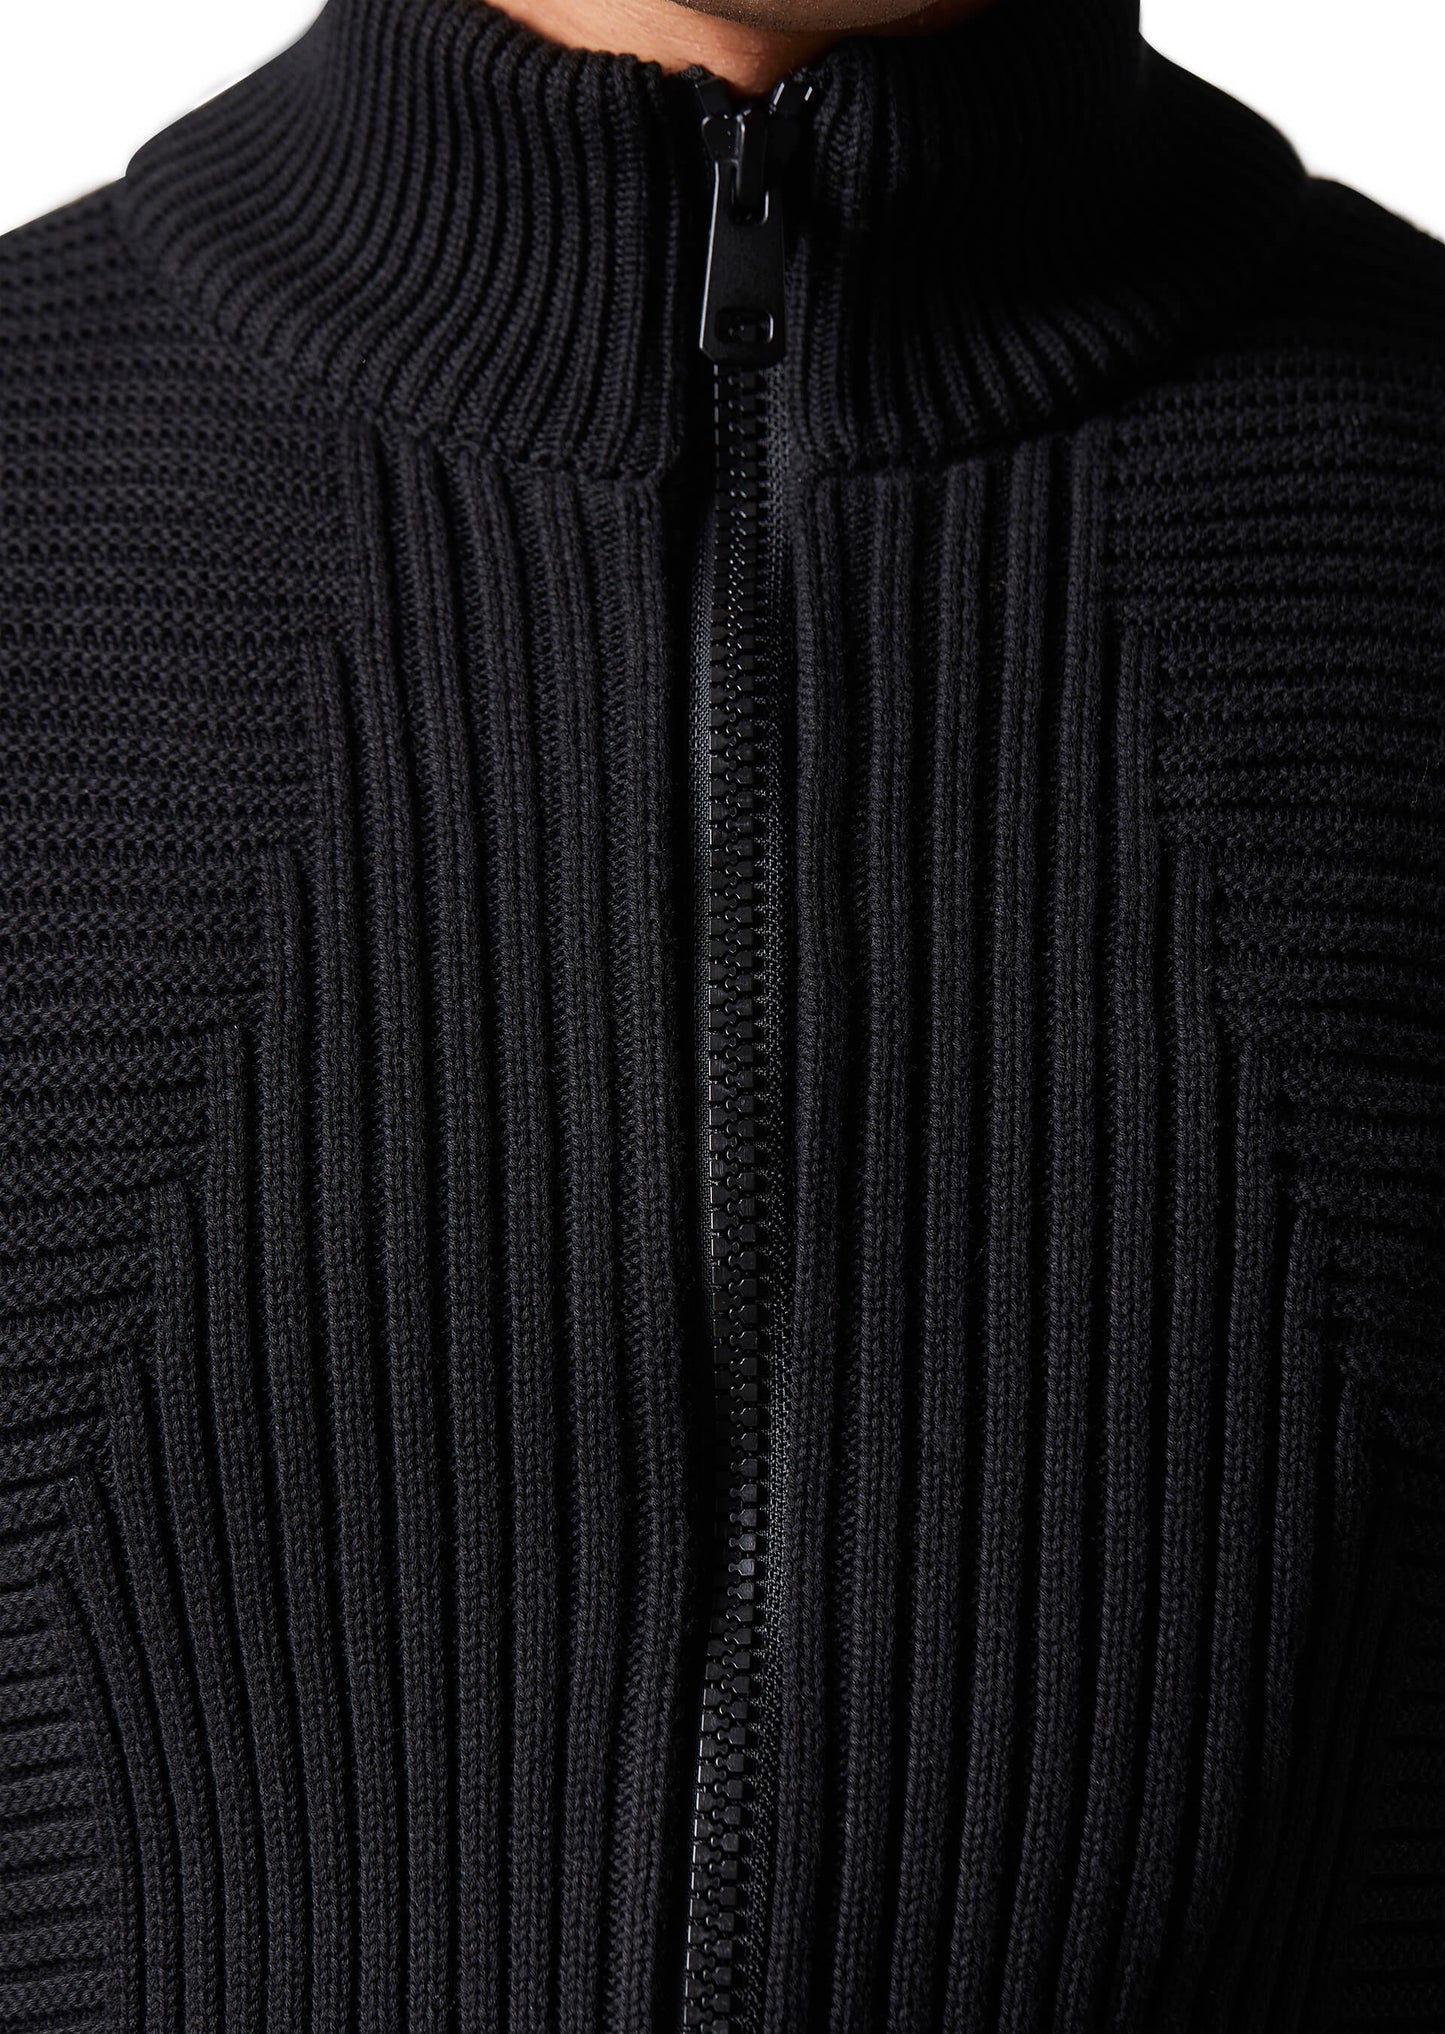 Stelzer Black Knitwear